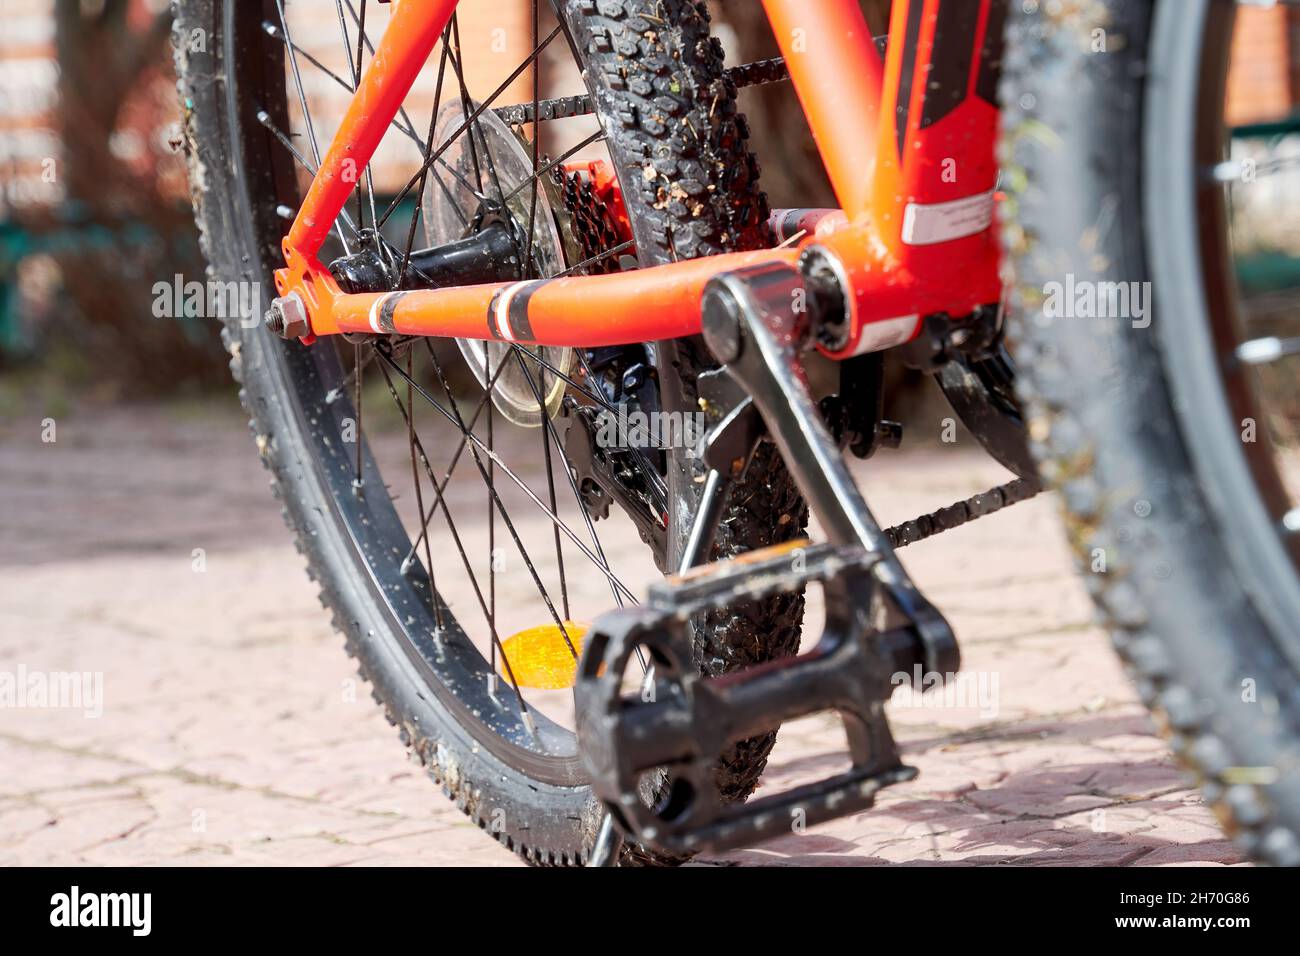 Vélo de sport roue sale sur la cour.Activités de loisirs Banque D'Images